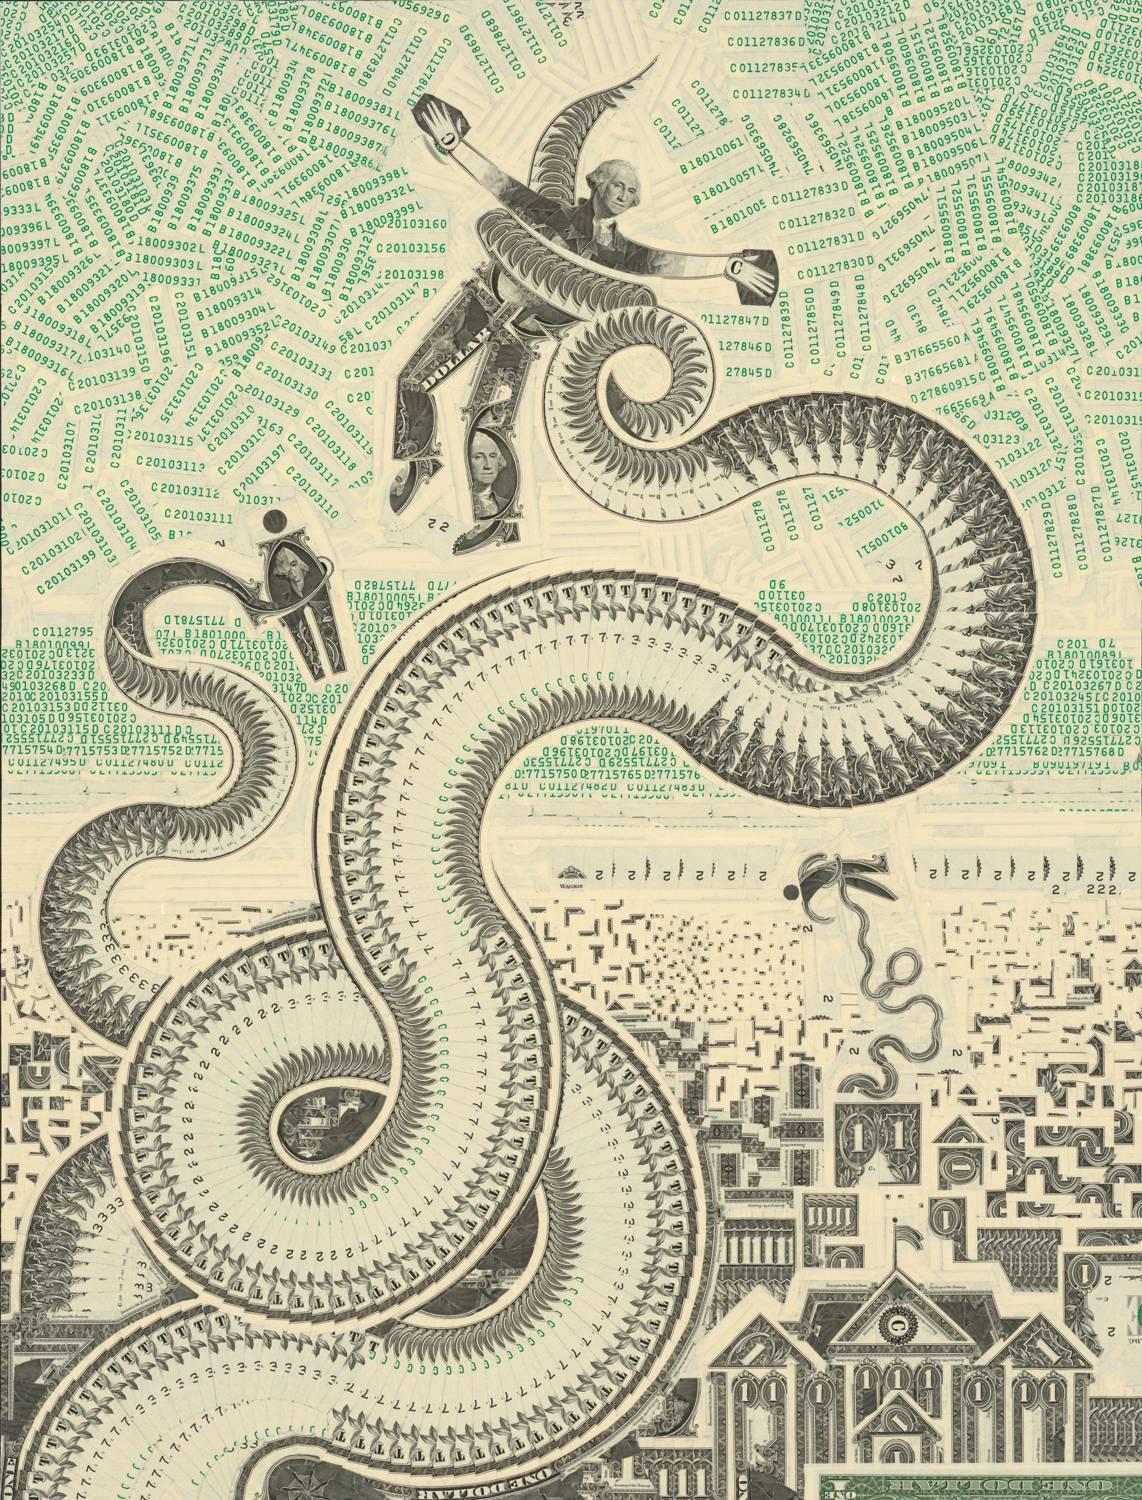 Octopi Wall Street - Mixed Media Art by Mark Wagner